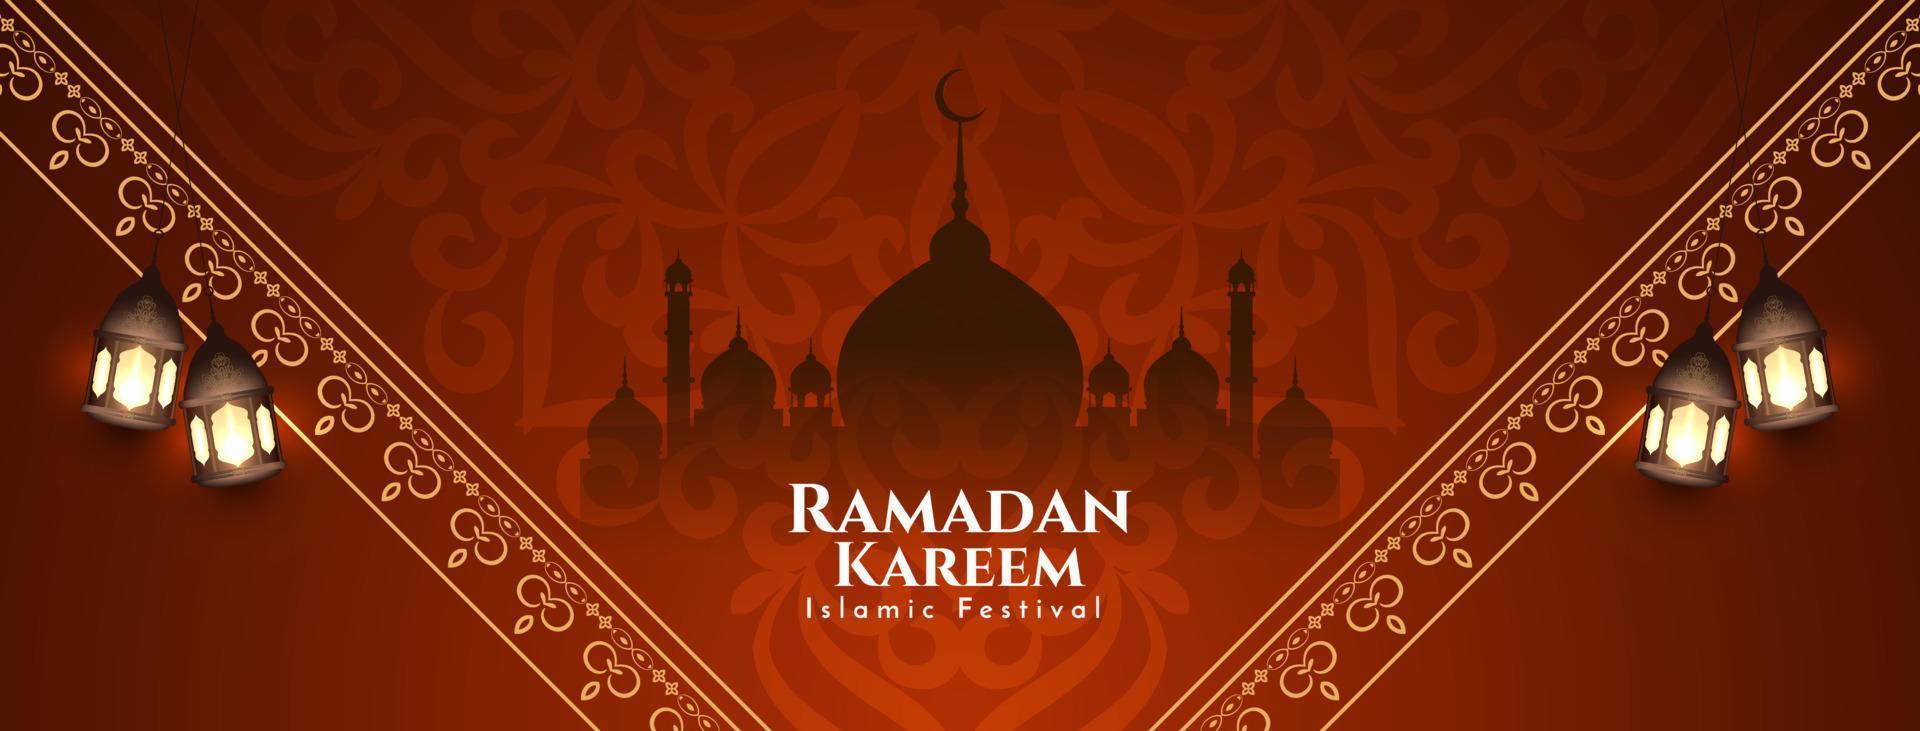 ramadan kareem islamisches fest grußbanner mit moschee vektor